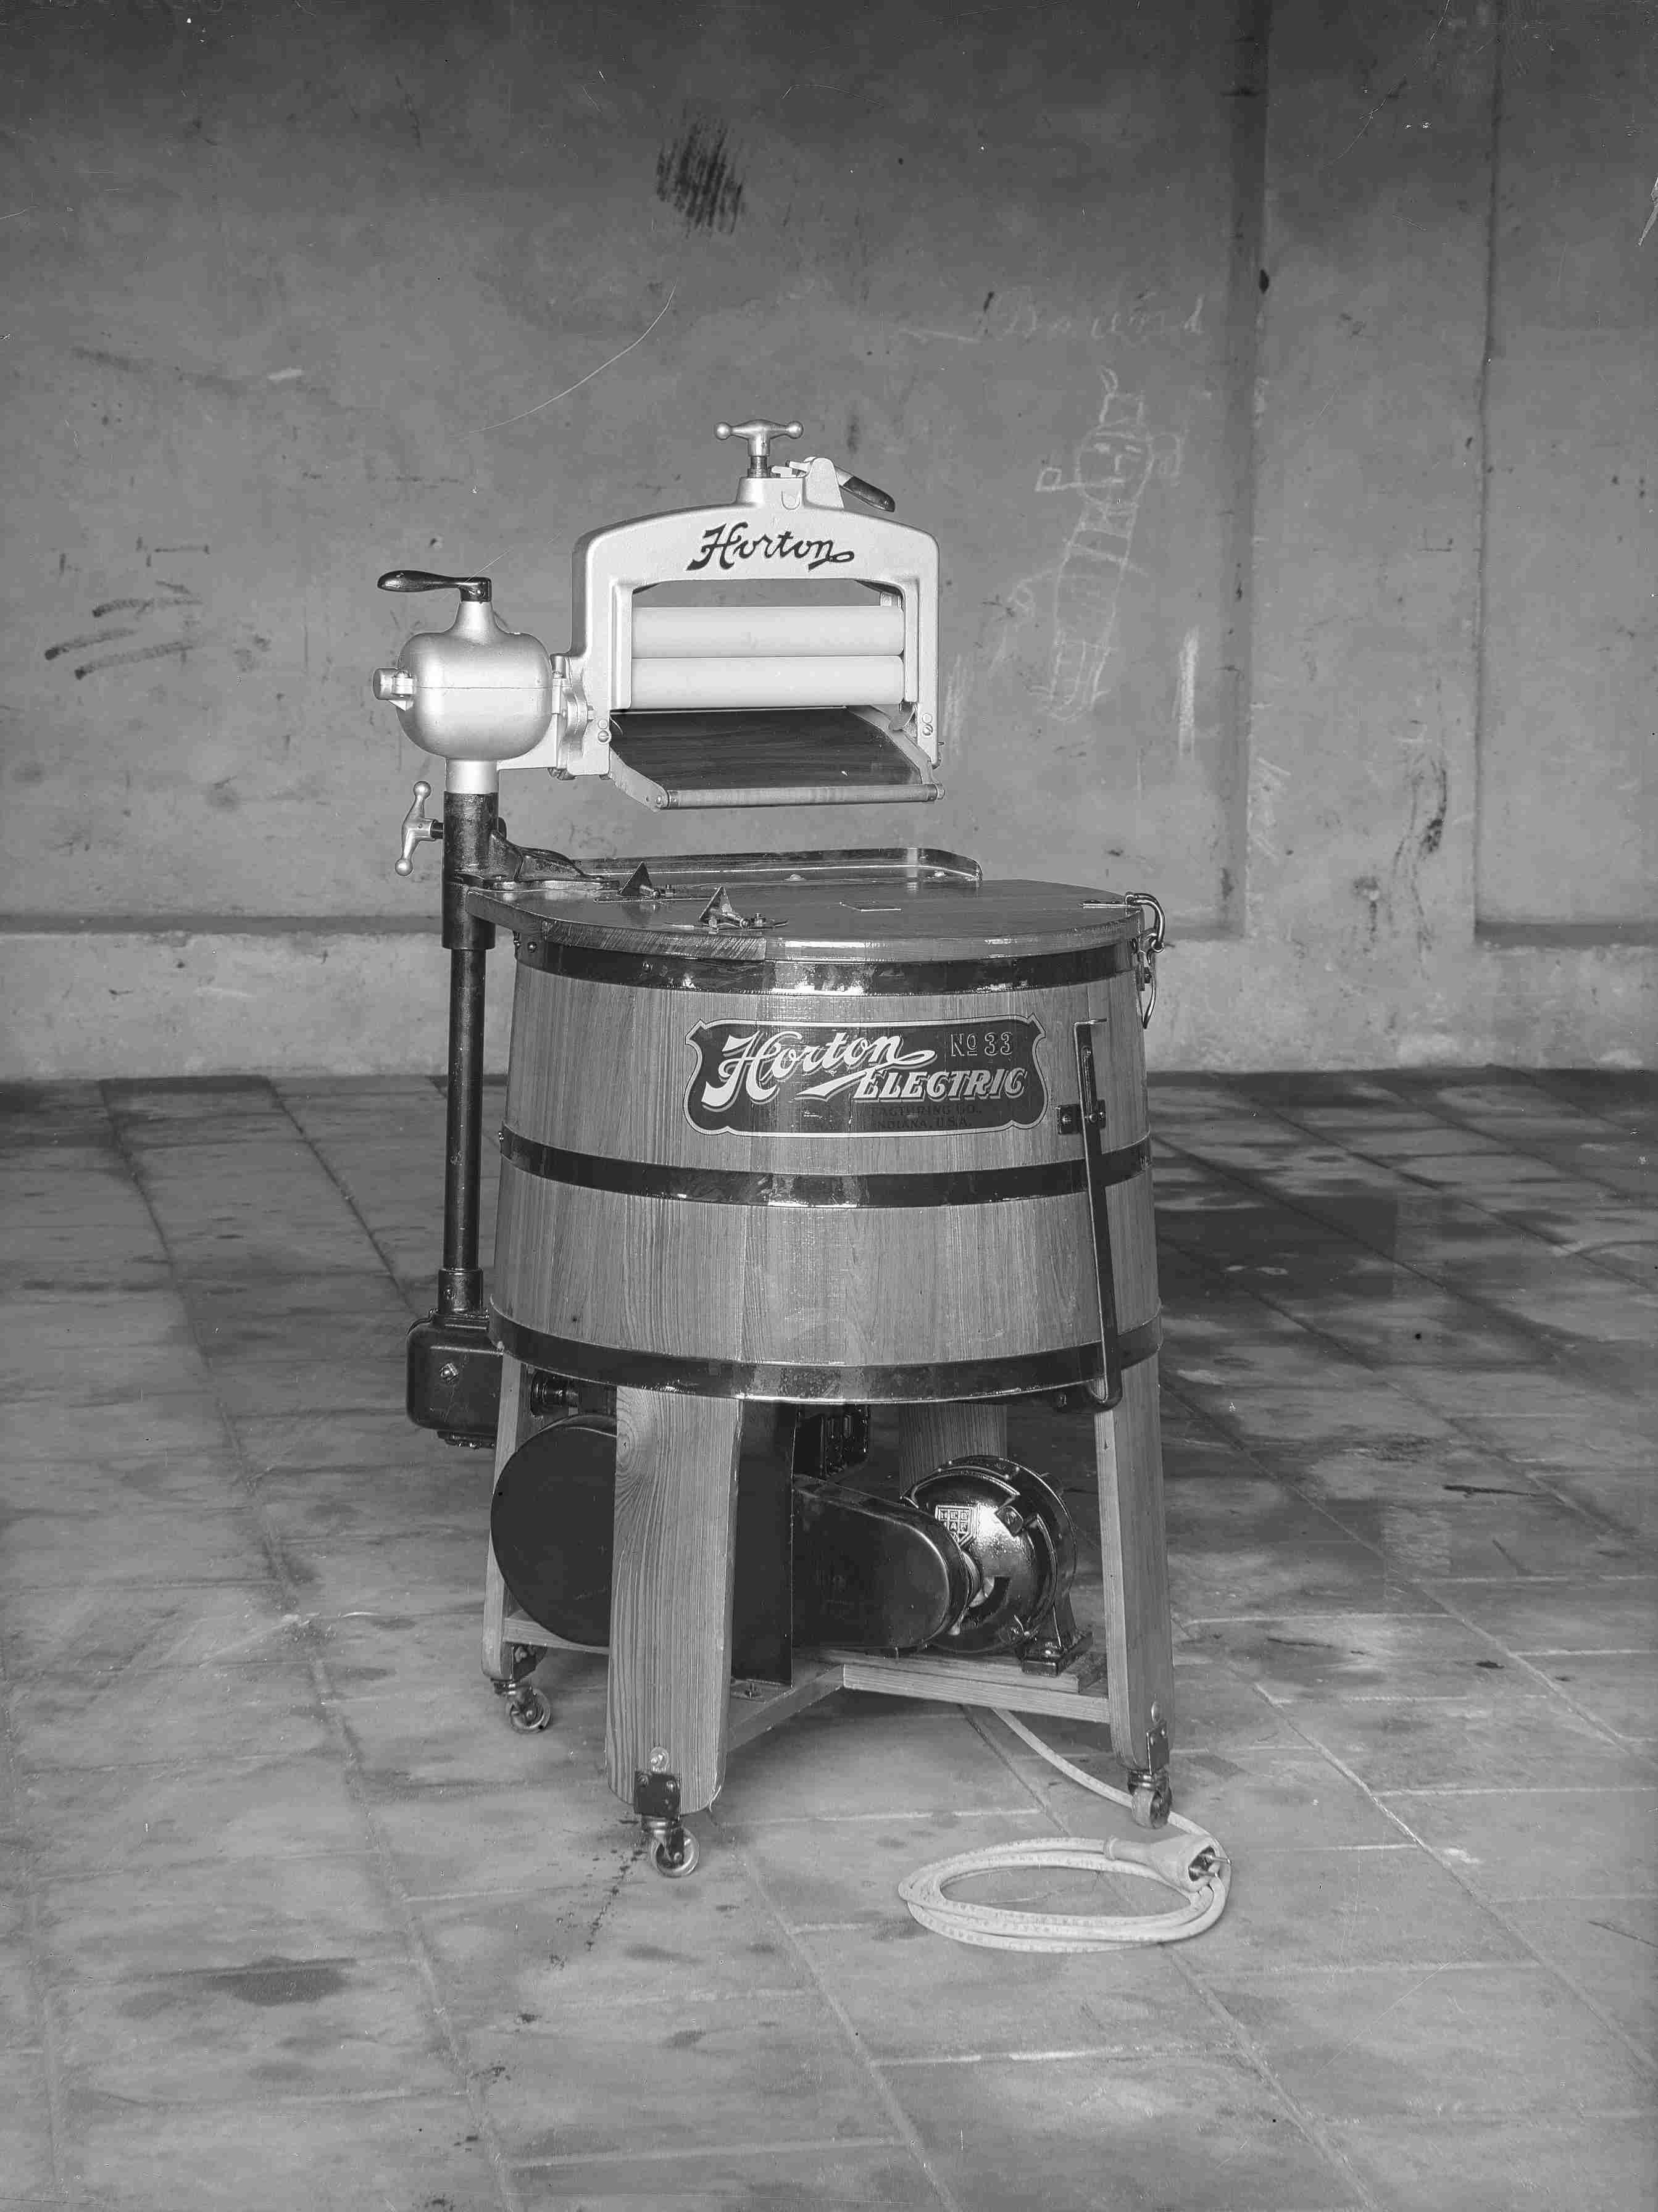 Willen collegegeld Wegversperring De eerste elektrische wasmachines van Nederland (Vélo) met een elektromotor  van de Heemaf (1928) + 2 x FILM